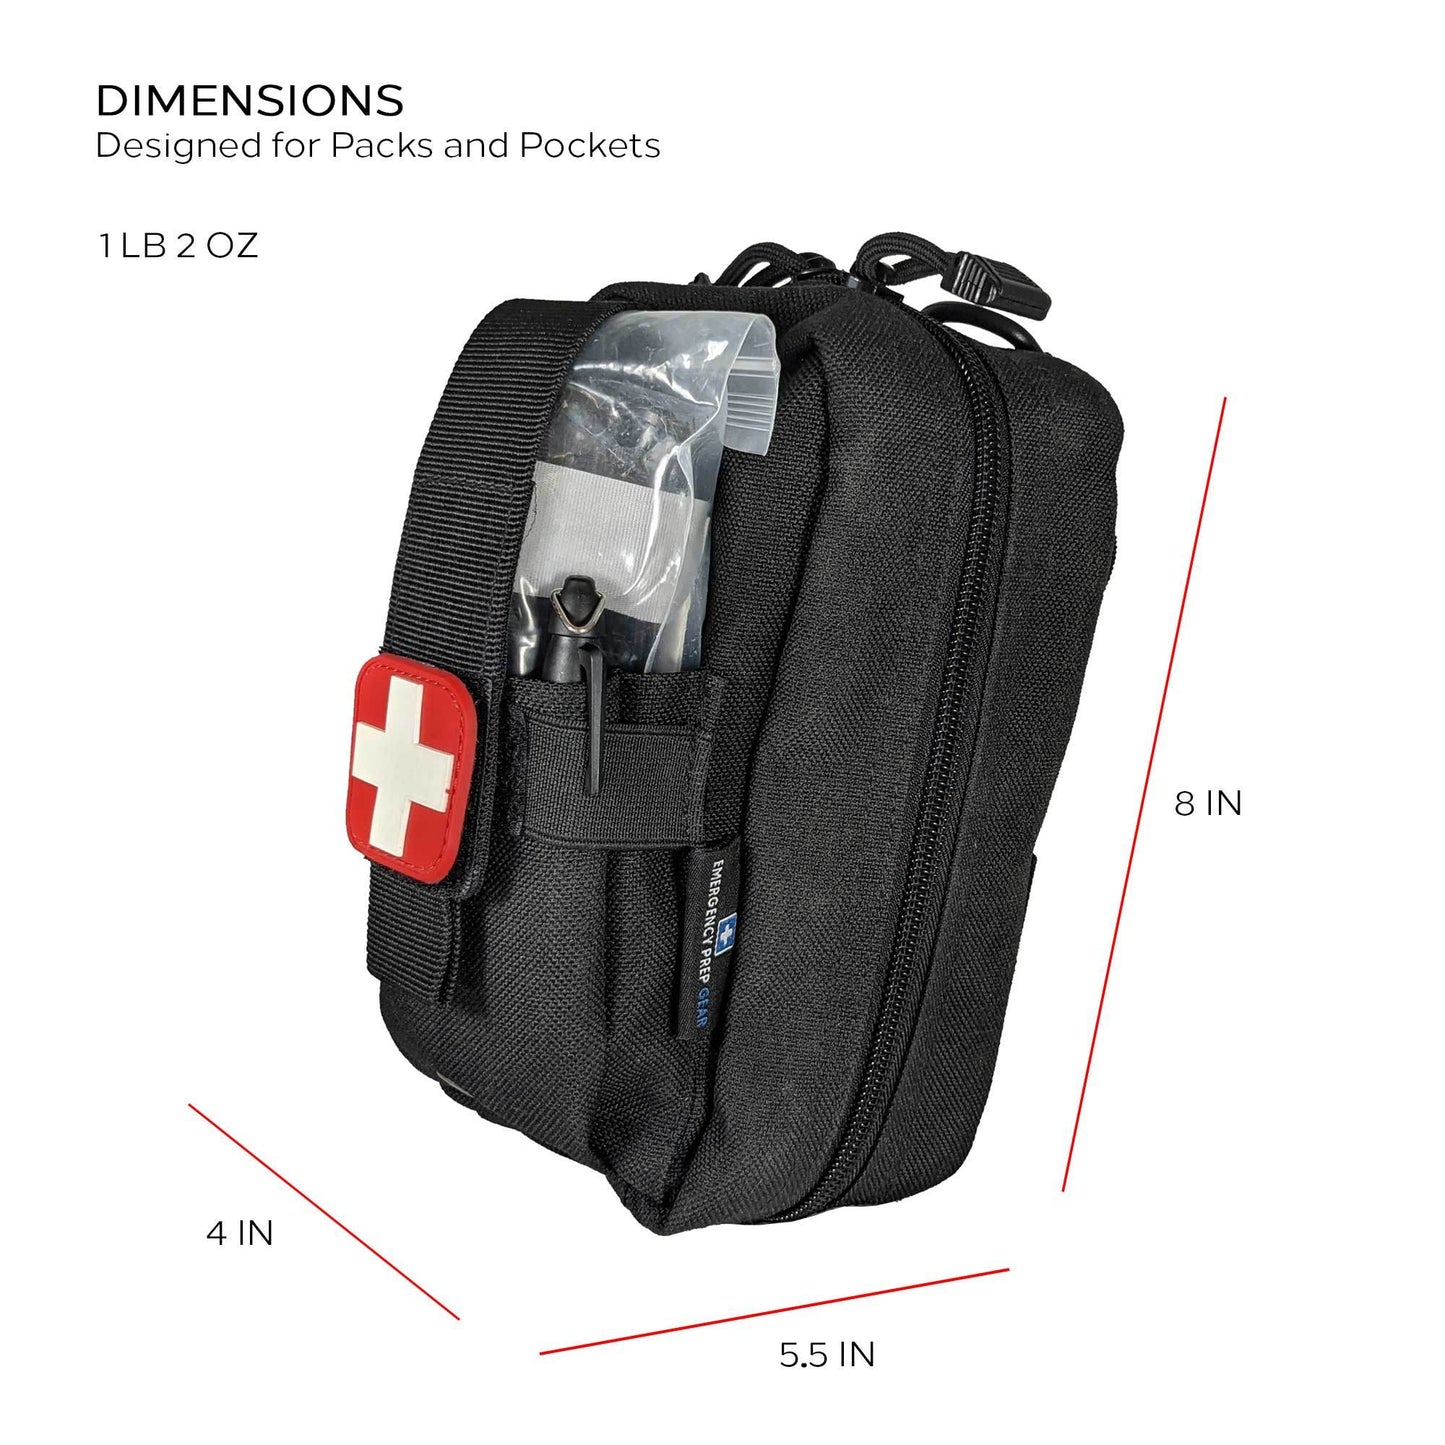 Field First Aid Kit (IFAK) | 44 Piece - DragonHearth